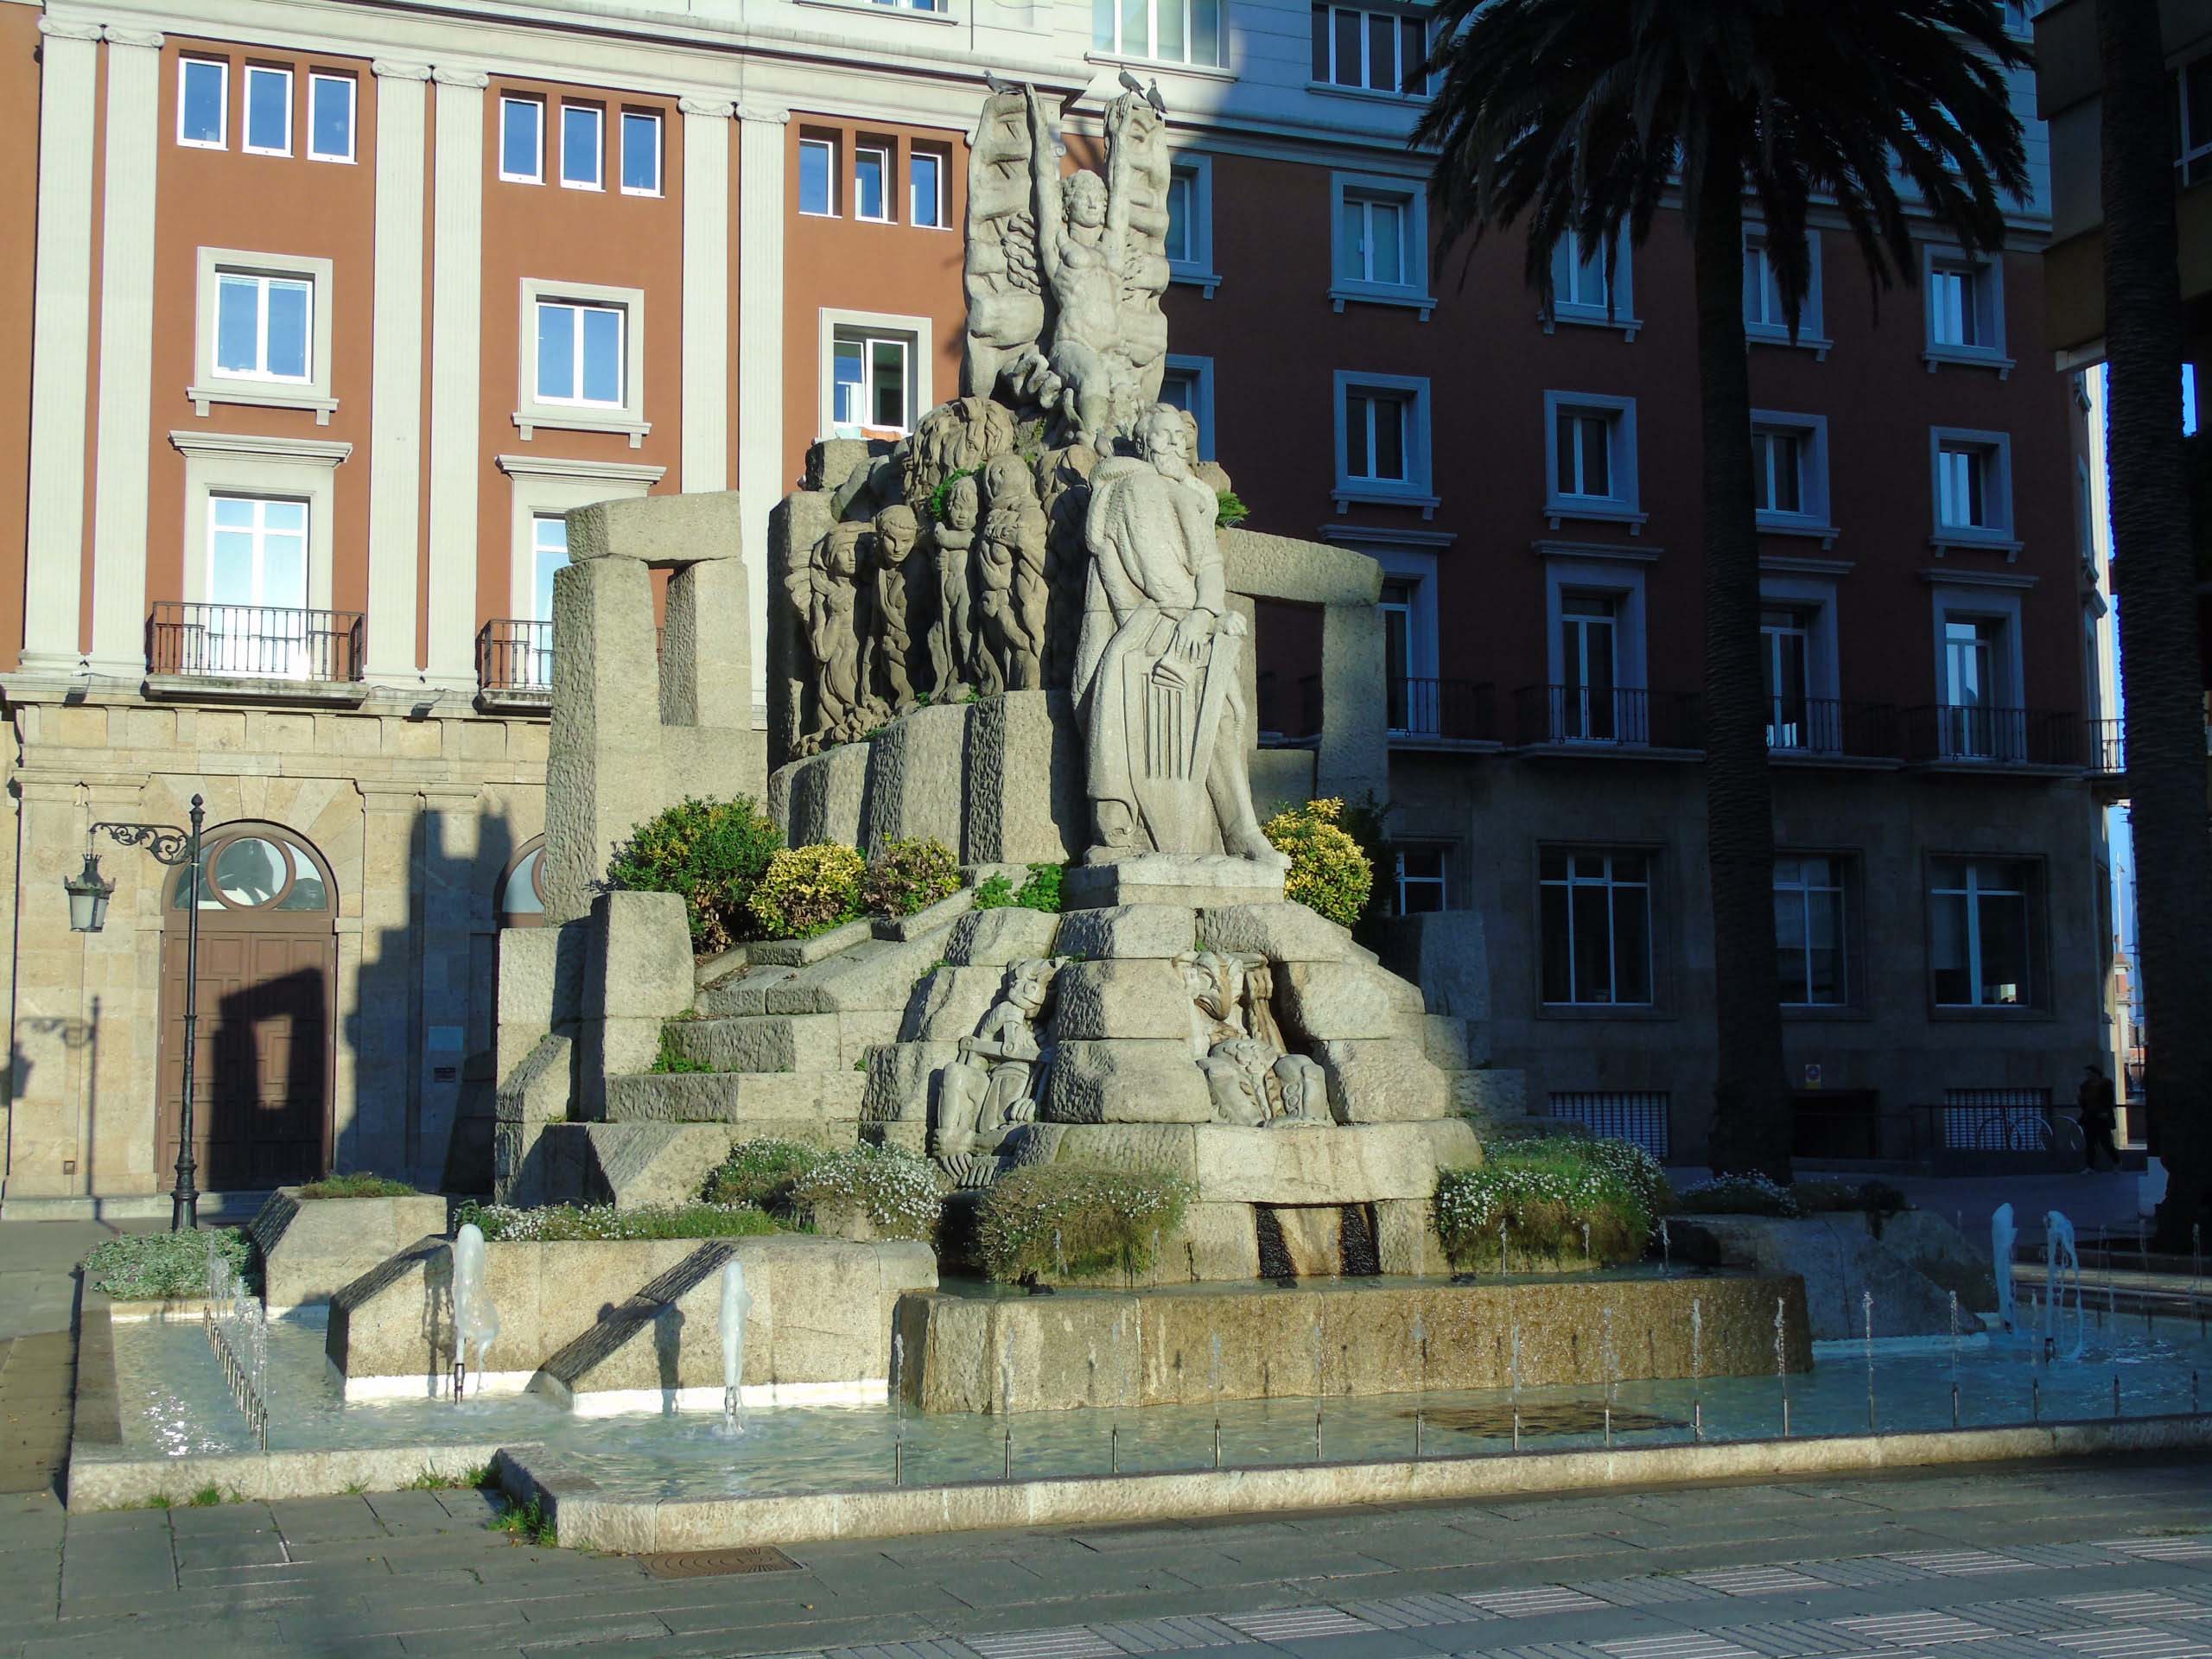 Monumento a Curros Enríquez en A Coruña.